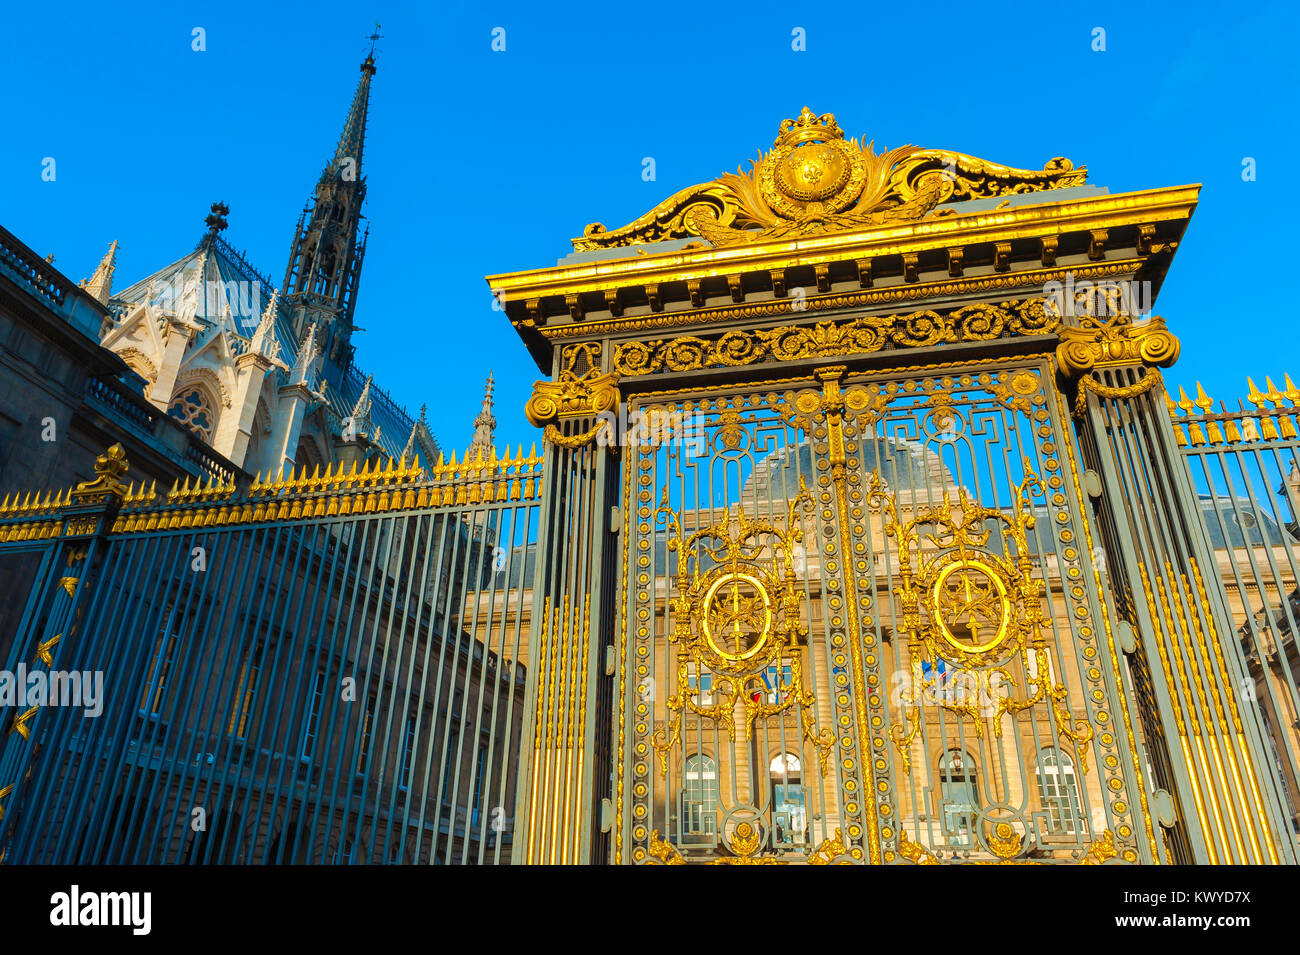 Détail de l'architecture de Paris, vue sur les portes richement décorées du Palais de Justice dans le centre de paris, France. Banque D'Images